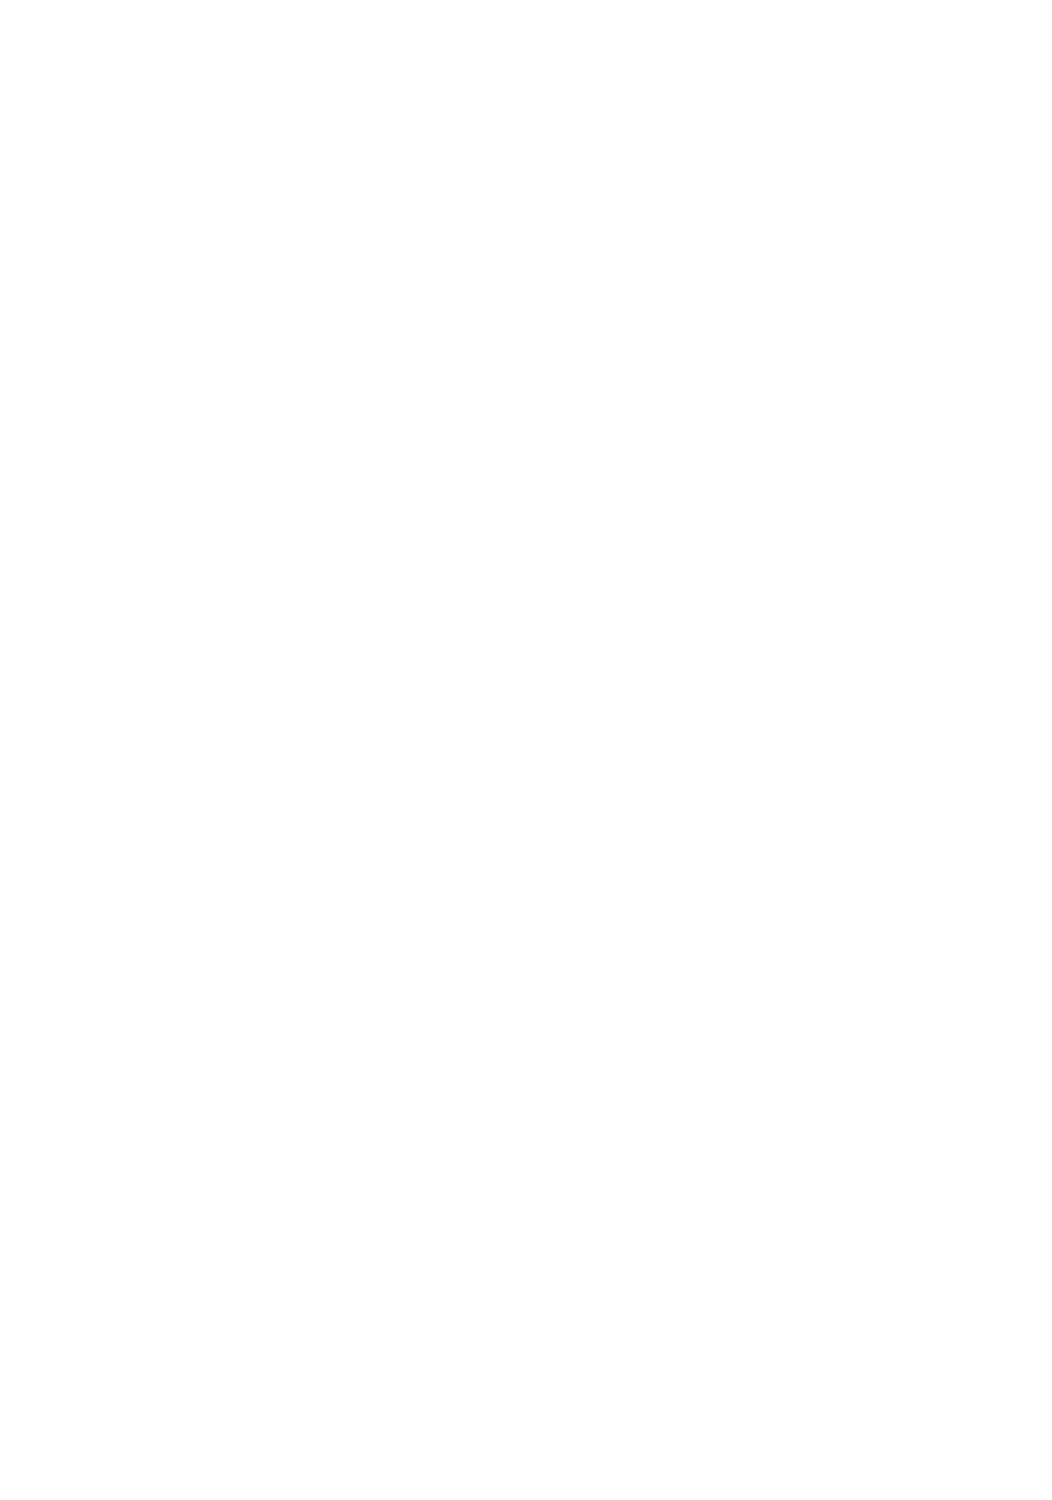 Пушкин А.С. Полное собрание сочинений в 9-ти томах. Т.9 Критика. История. Автобиография - 1937